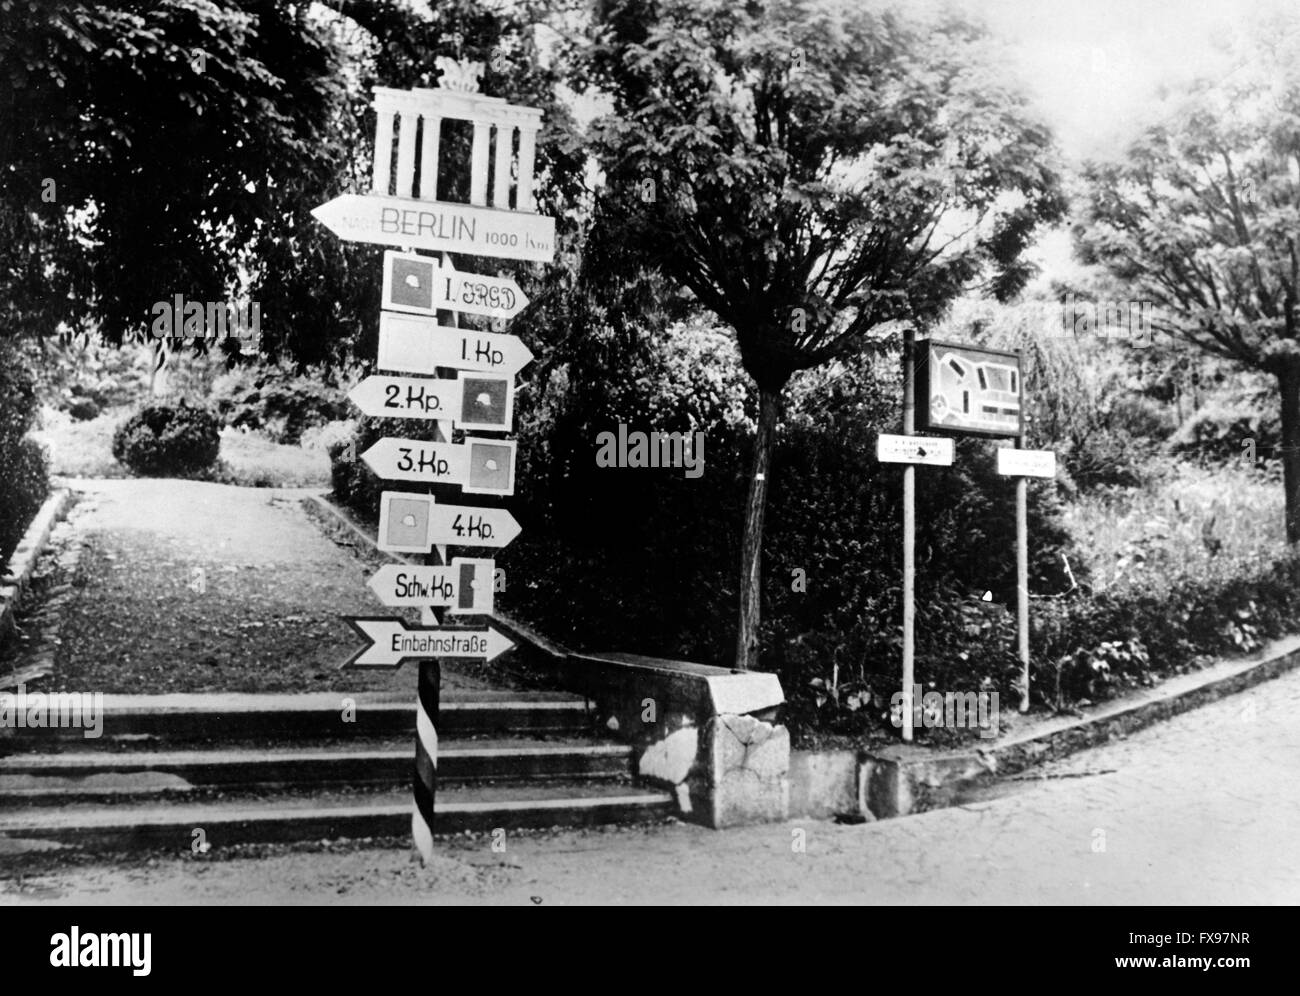 L'immagine della propaganda nazista raffigura un cartello in Jugoslavia con l'iscrizione "Berlino 1000 km" sotto un'immagine del Brandenburger Tor (porta di Brandeburgo). La foto è stata pubblicata nel maggio 1941. Fotoarchiv für Zeitgeschichtee - SENZA FILI - Foto Stock